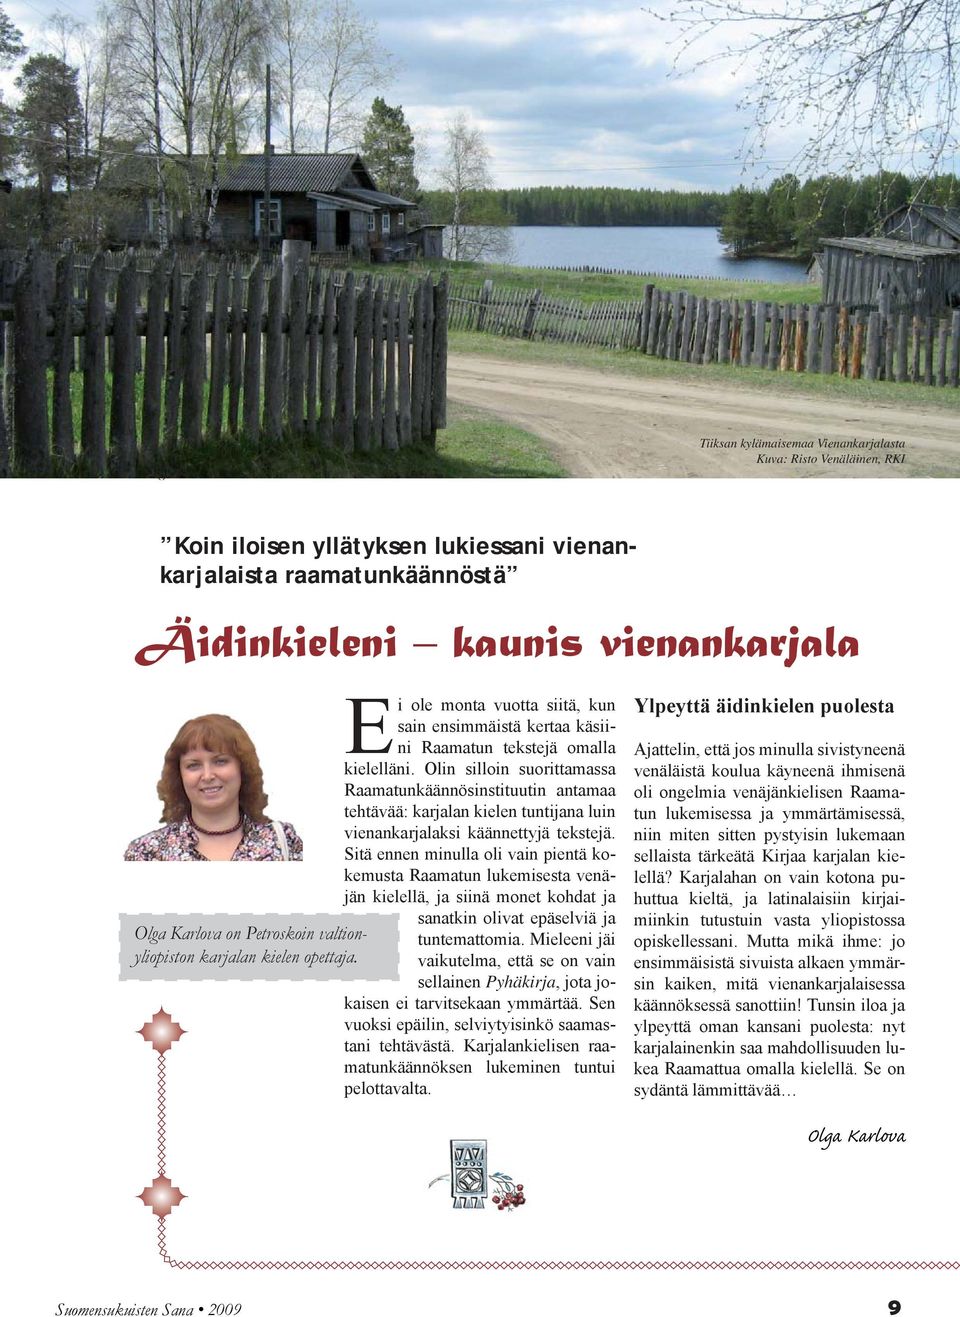 Olin silloin suorittamassa Raamatunkäännösinstituutin antamaa tehtävää: karjalan kielen tuntijana luin vienankarjalaksi käännettyjä tekstejä.